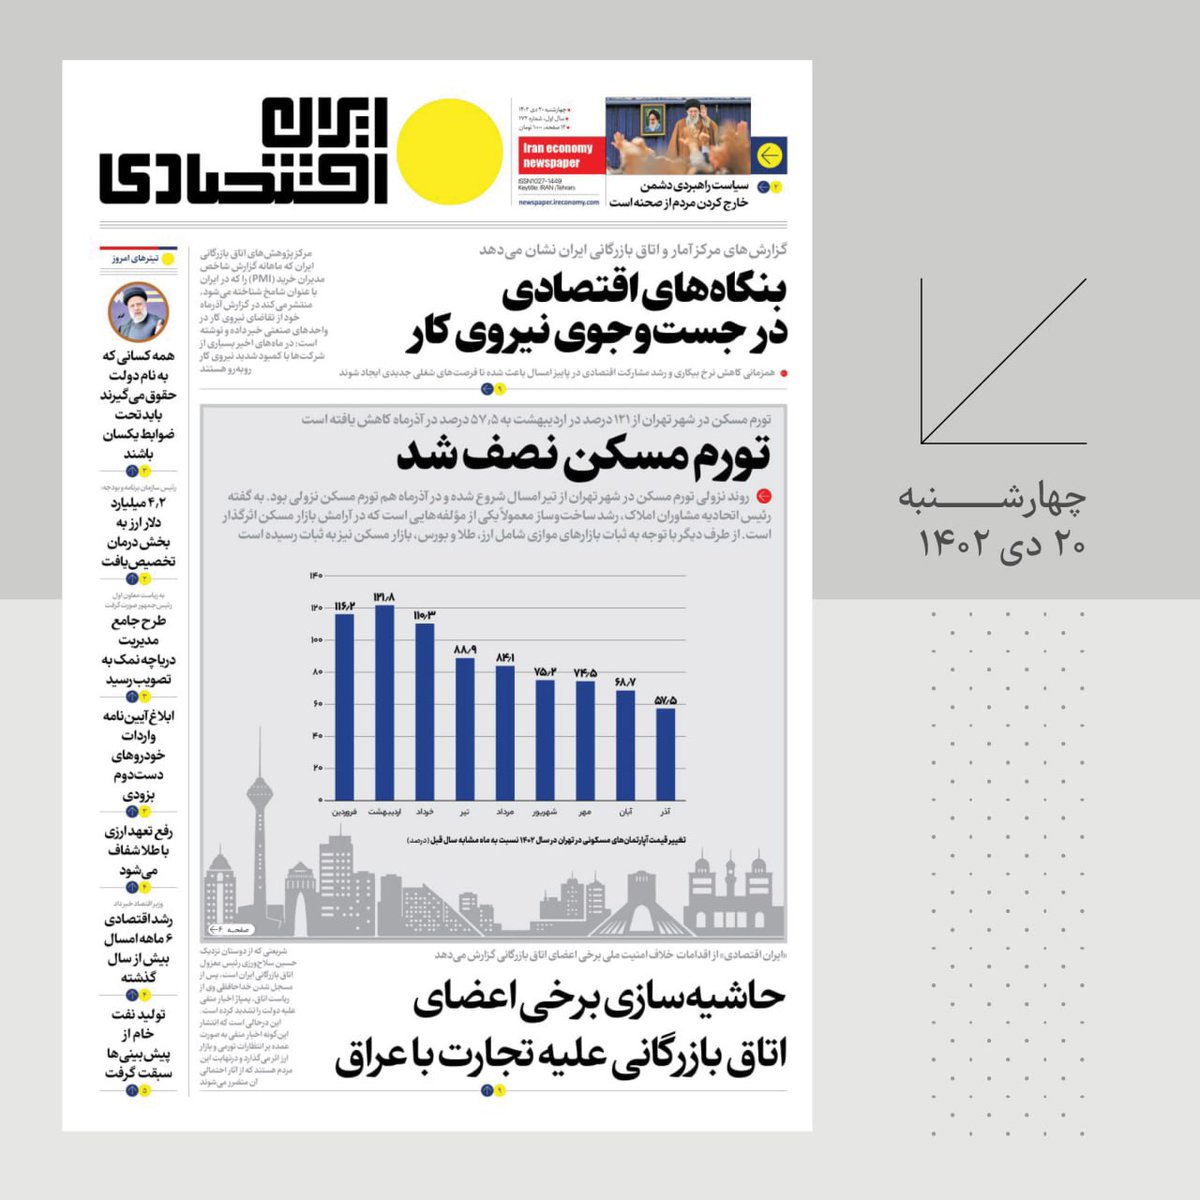 IranNewspaper tweet picture